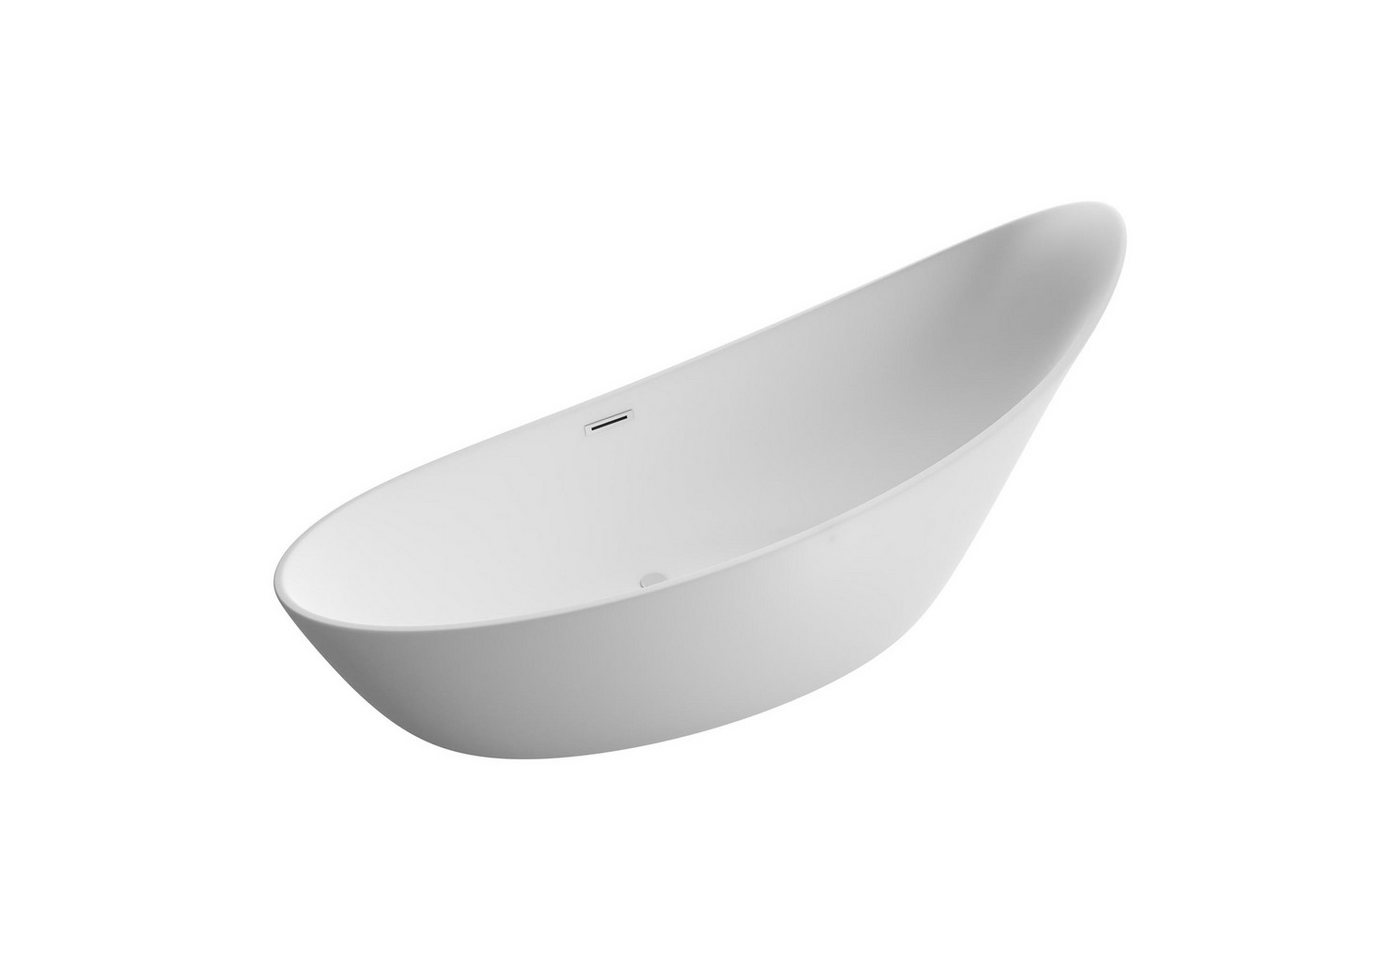 Bernstein Badewanne SOPHIE, (modernes Design / Acrylwanne / Sanitäracryl / hochgezogener Rückenteil), freistehende Wanne / Weiß Glänzend / 190 cm x 80 cm / Acryl / Oval von Bernstein